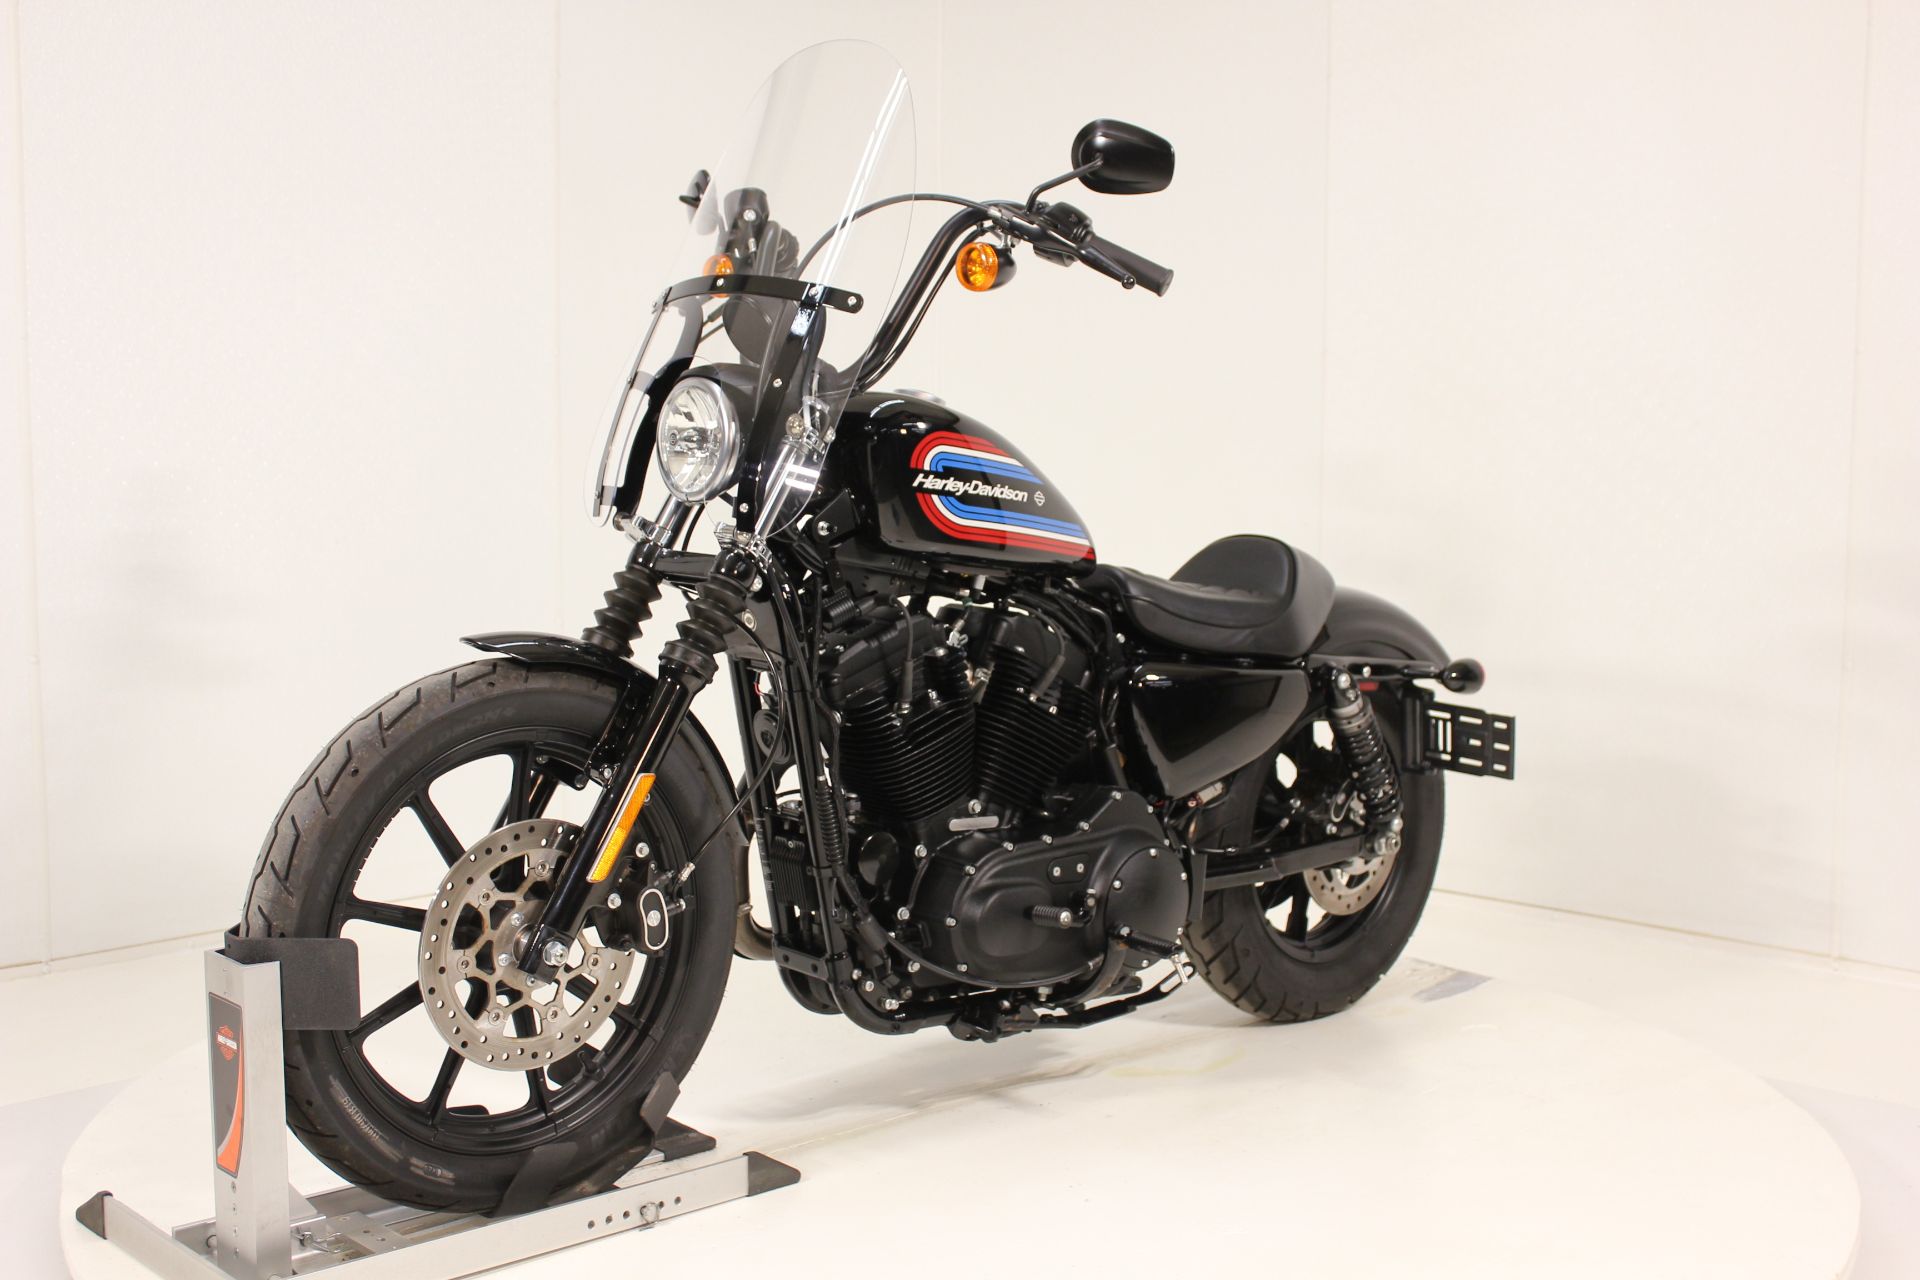 2020 Harley-Davidson Iron 1200™ in Pittsfield, Massachusetts - Photo 8